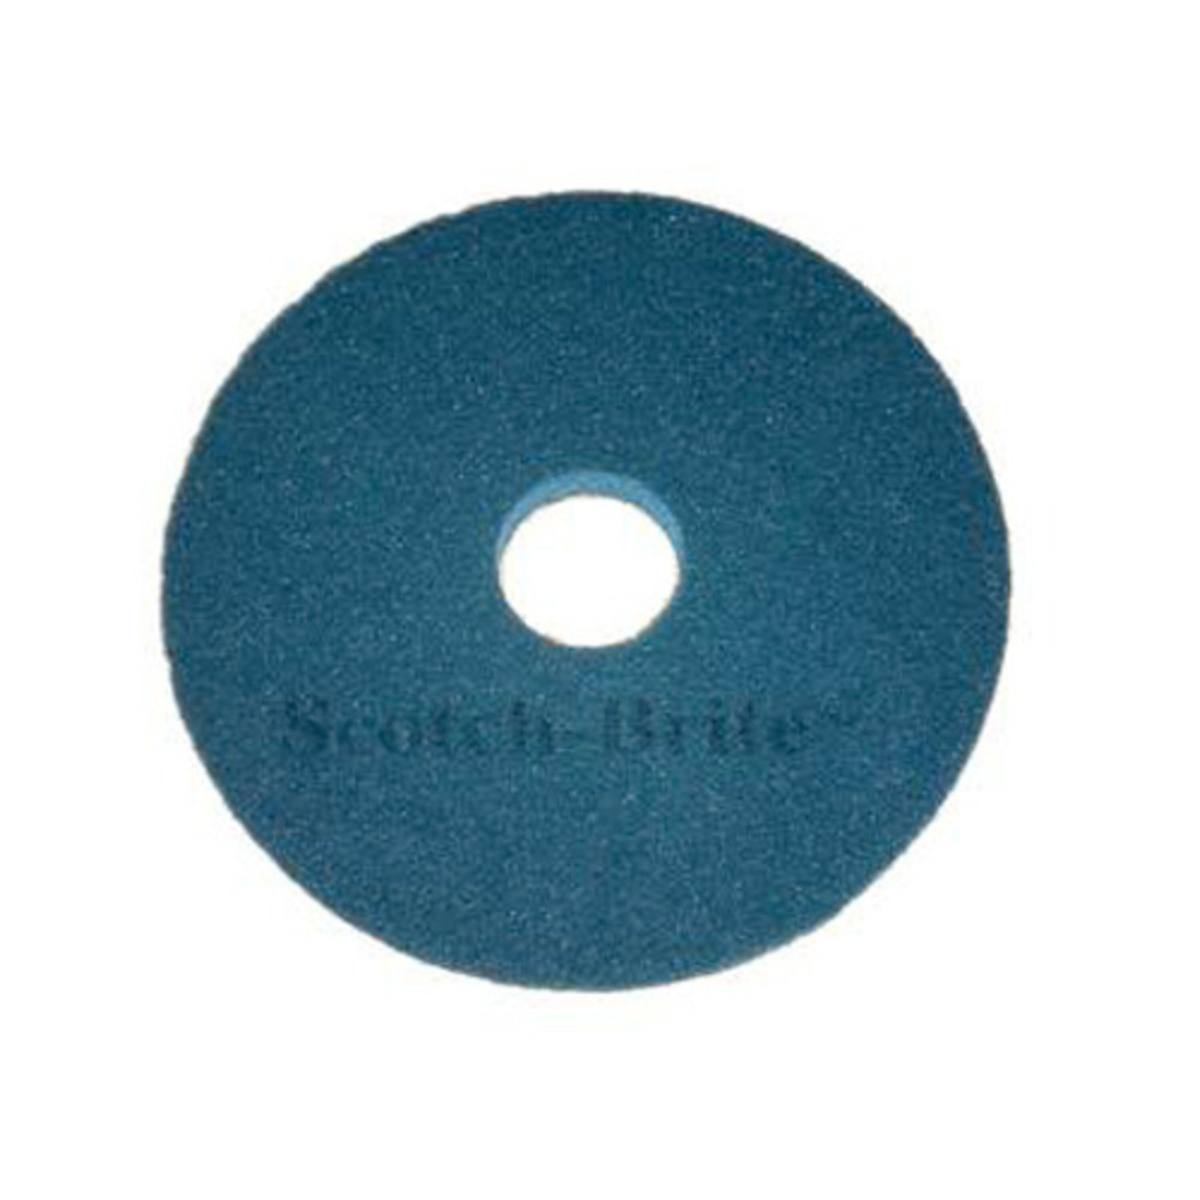 3M Scotch-Brite Superpad, Blau, 406 mm